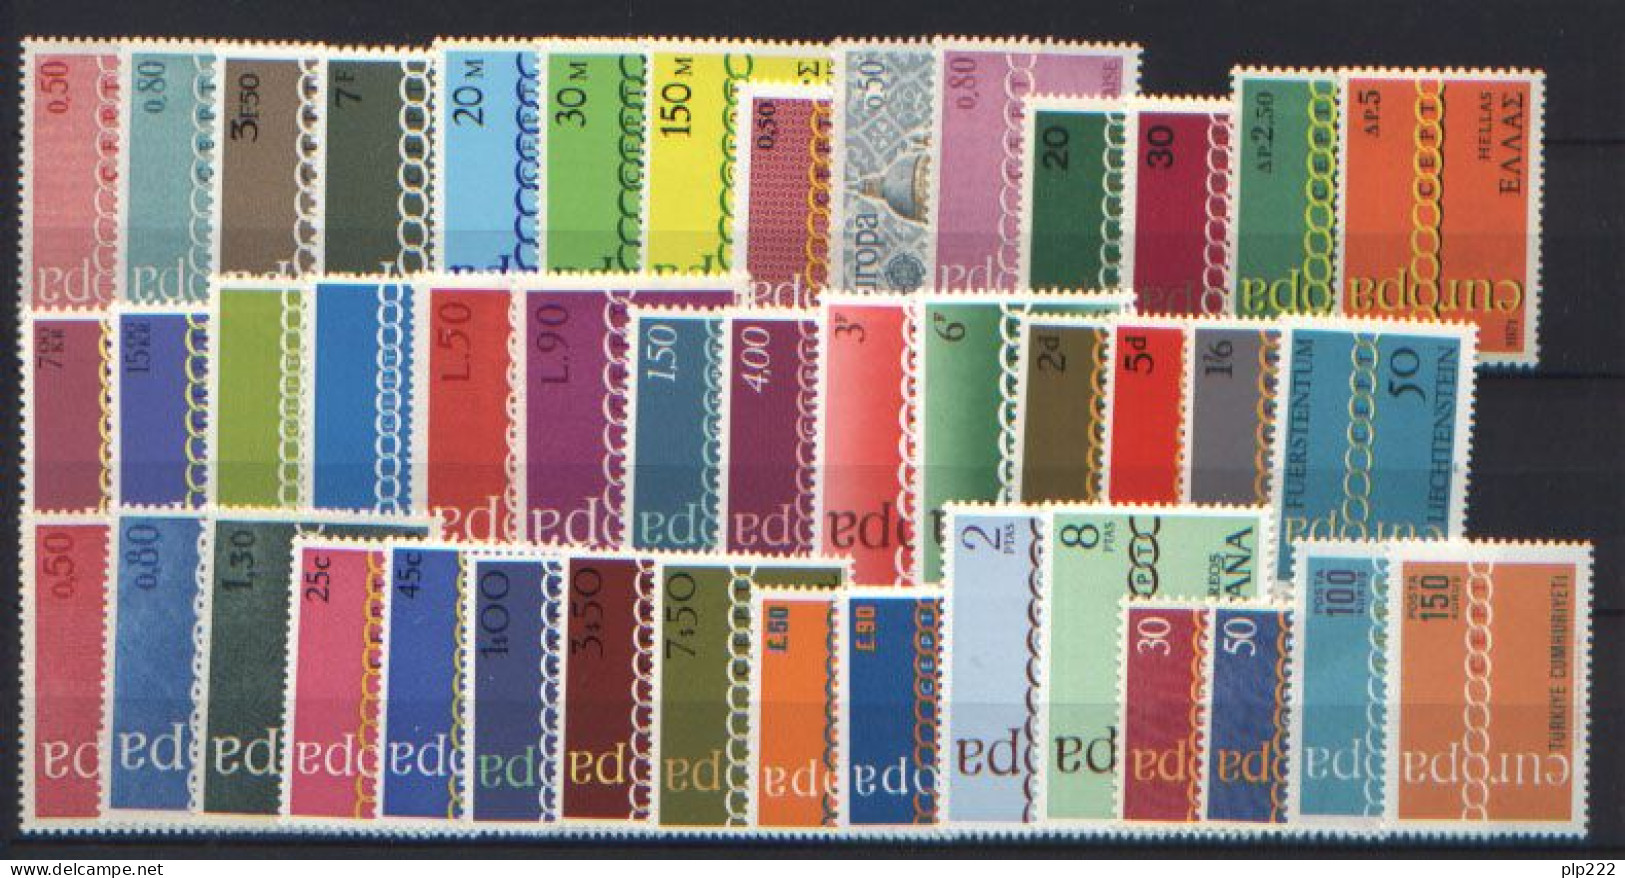 Europa CEPT 1971 Annata Completa + Foglietti / Complete Year Set + S/S **/MNH VF - Volledig Jaar